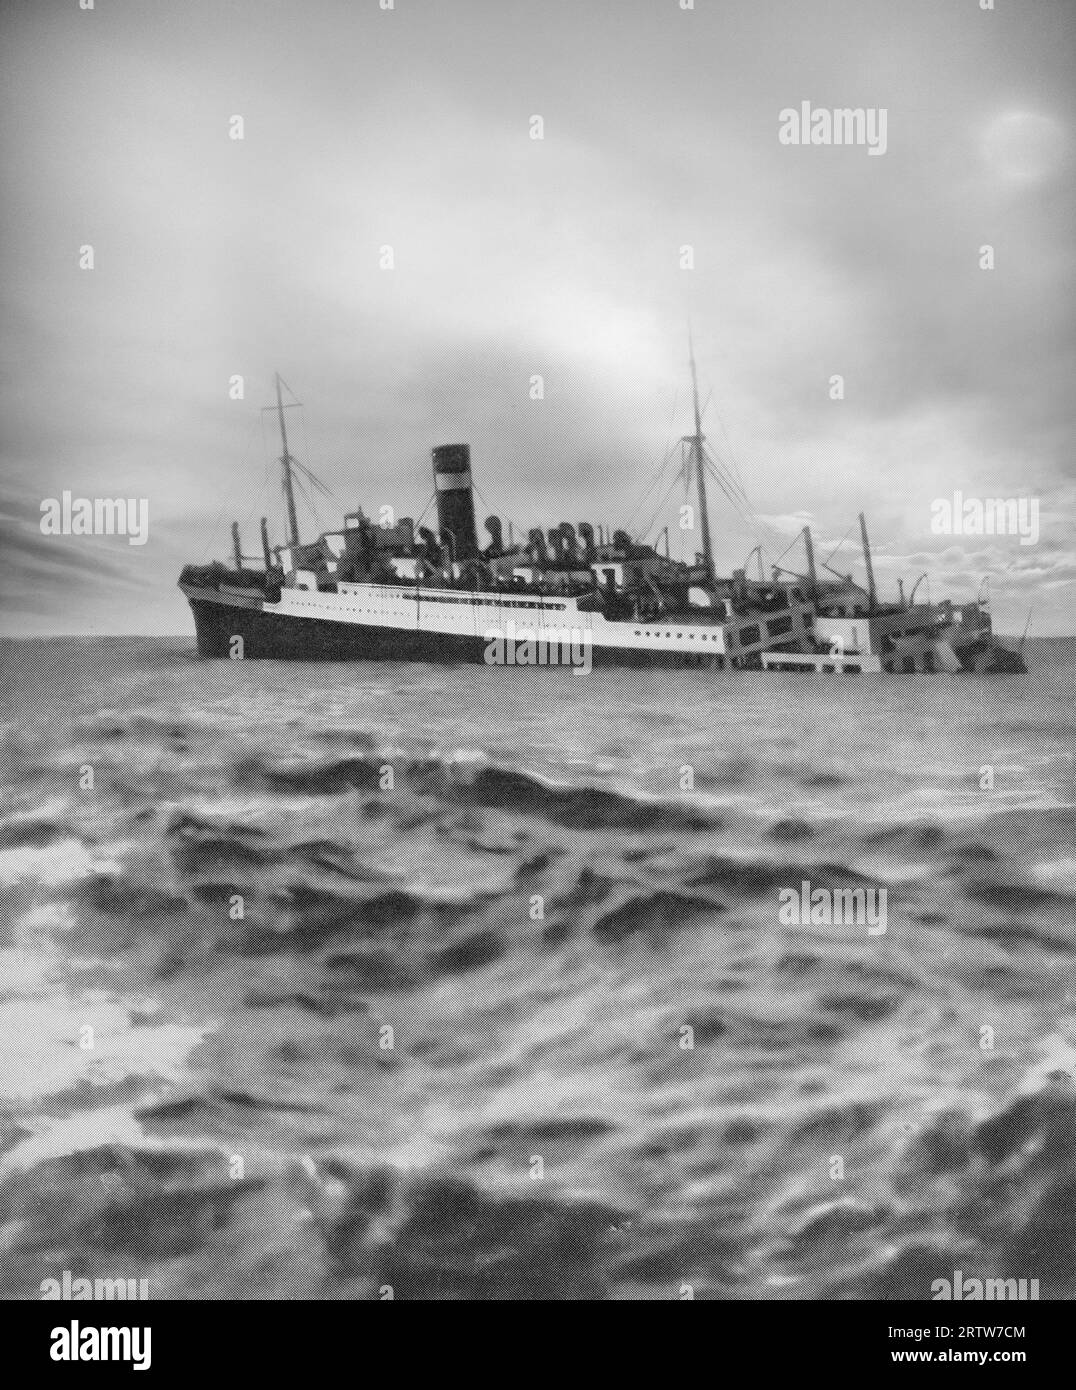 Il 3 settembre 1939, il giorno dello scoppio della seconda guerra mondiale il 3 settembre 1939, un U-boat tedesco silurò la SS Athenia in mezzo all'Atlantico. Degli oltre 1.000 passeggeri, tra cui donne e bambini, che viaggiavano da Belfast a Montreal, solo 112 sono stati salvati. Foto Stock